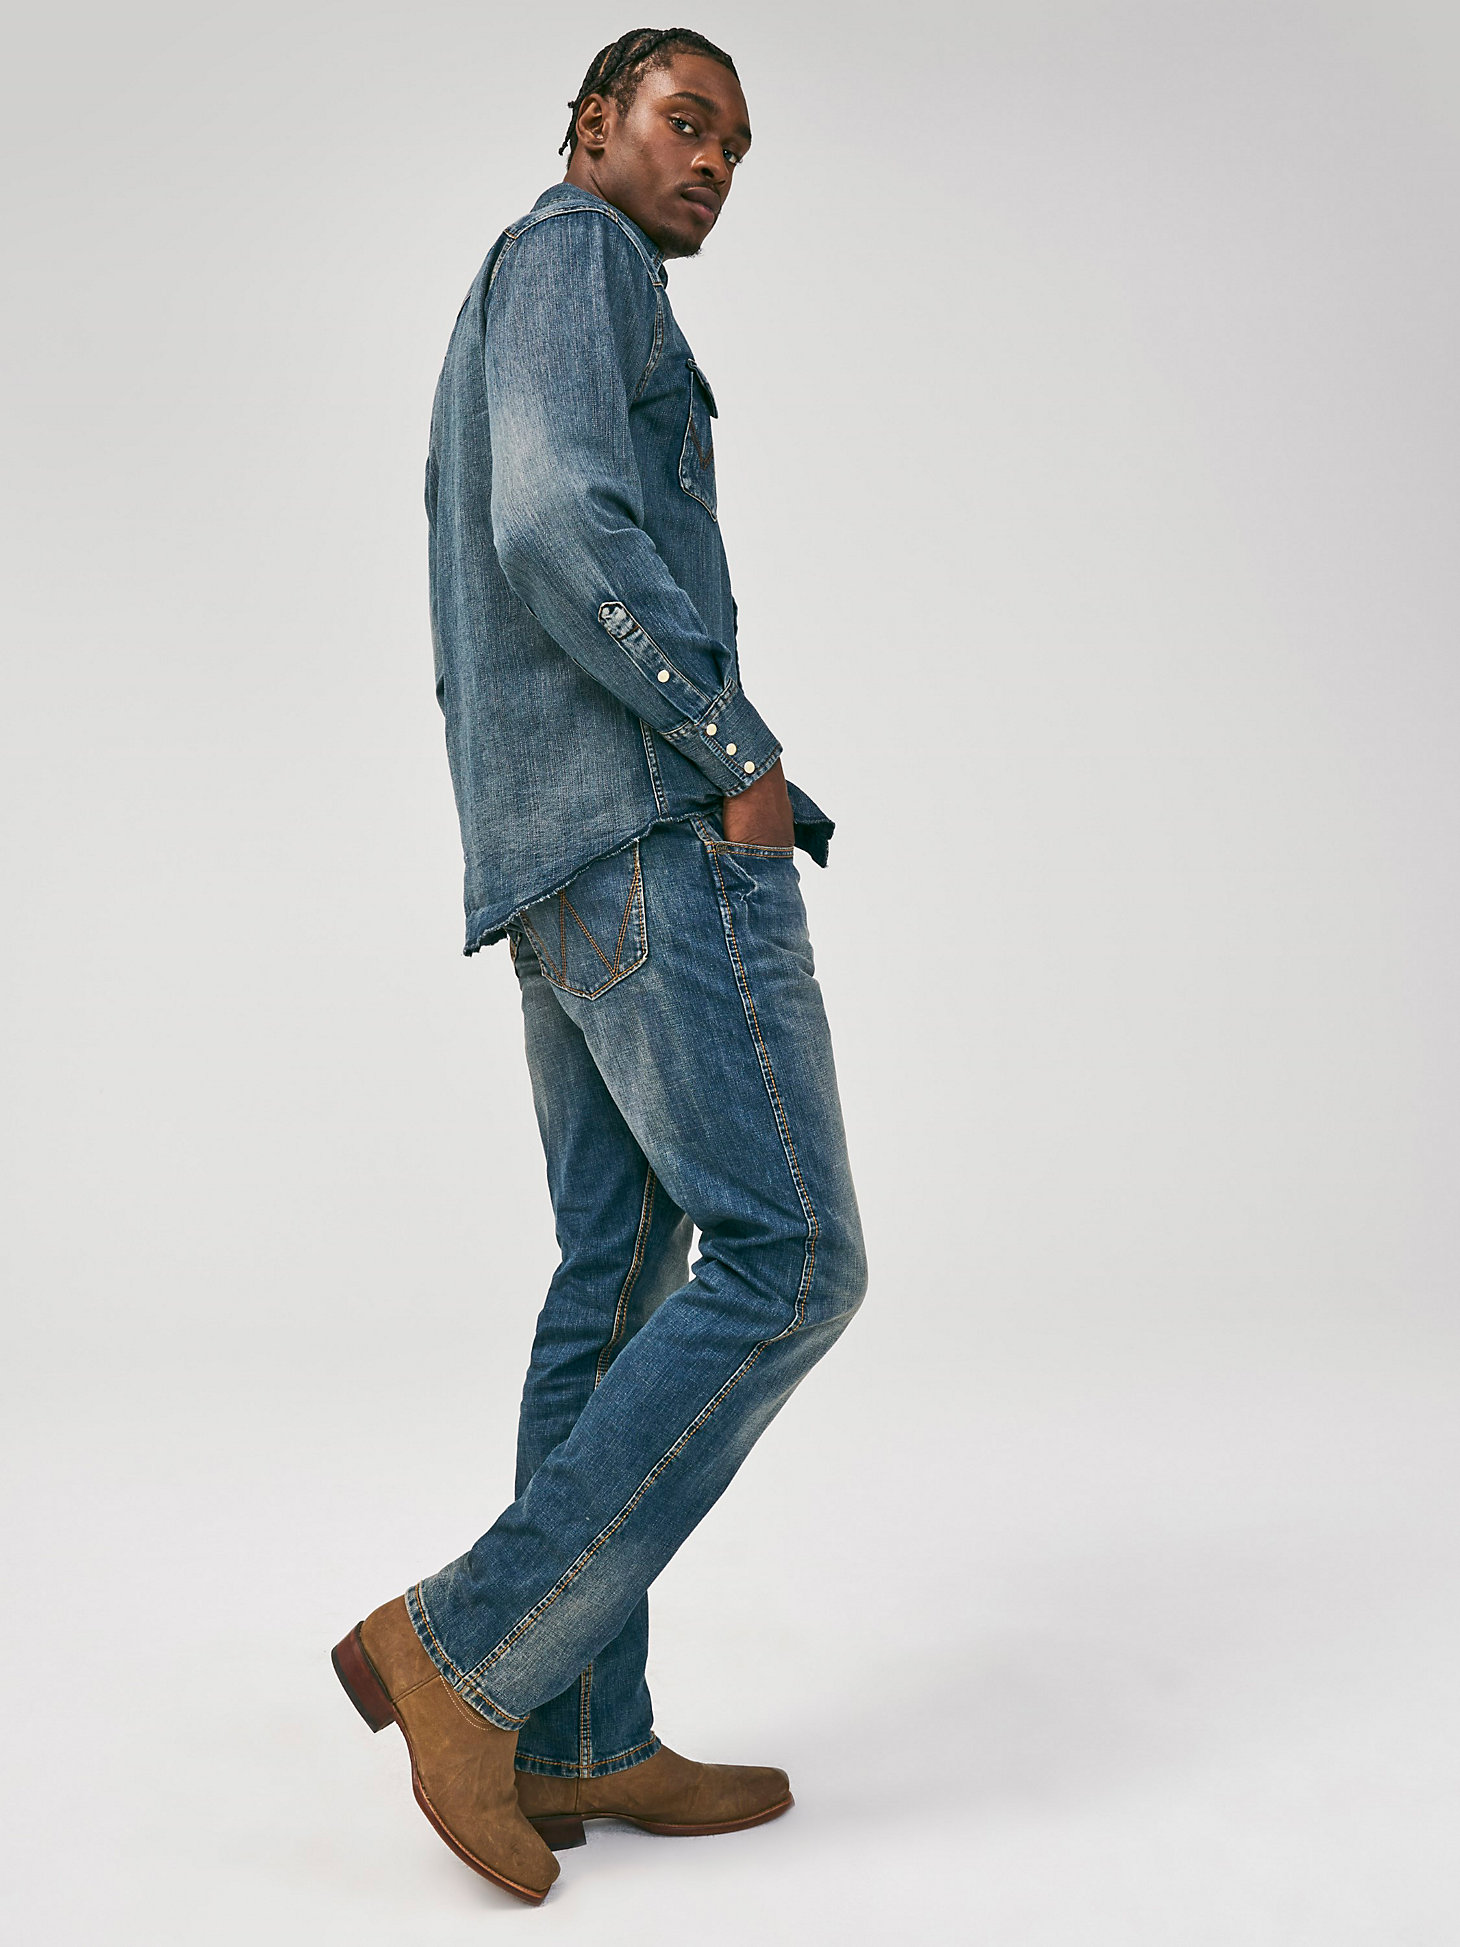 Men's Wrangler Retro® Slim Fit Straight Leg Jean in Bozeman alternative view 1